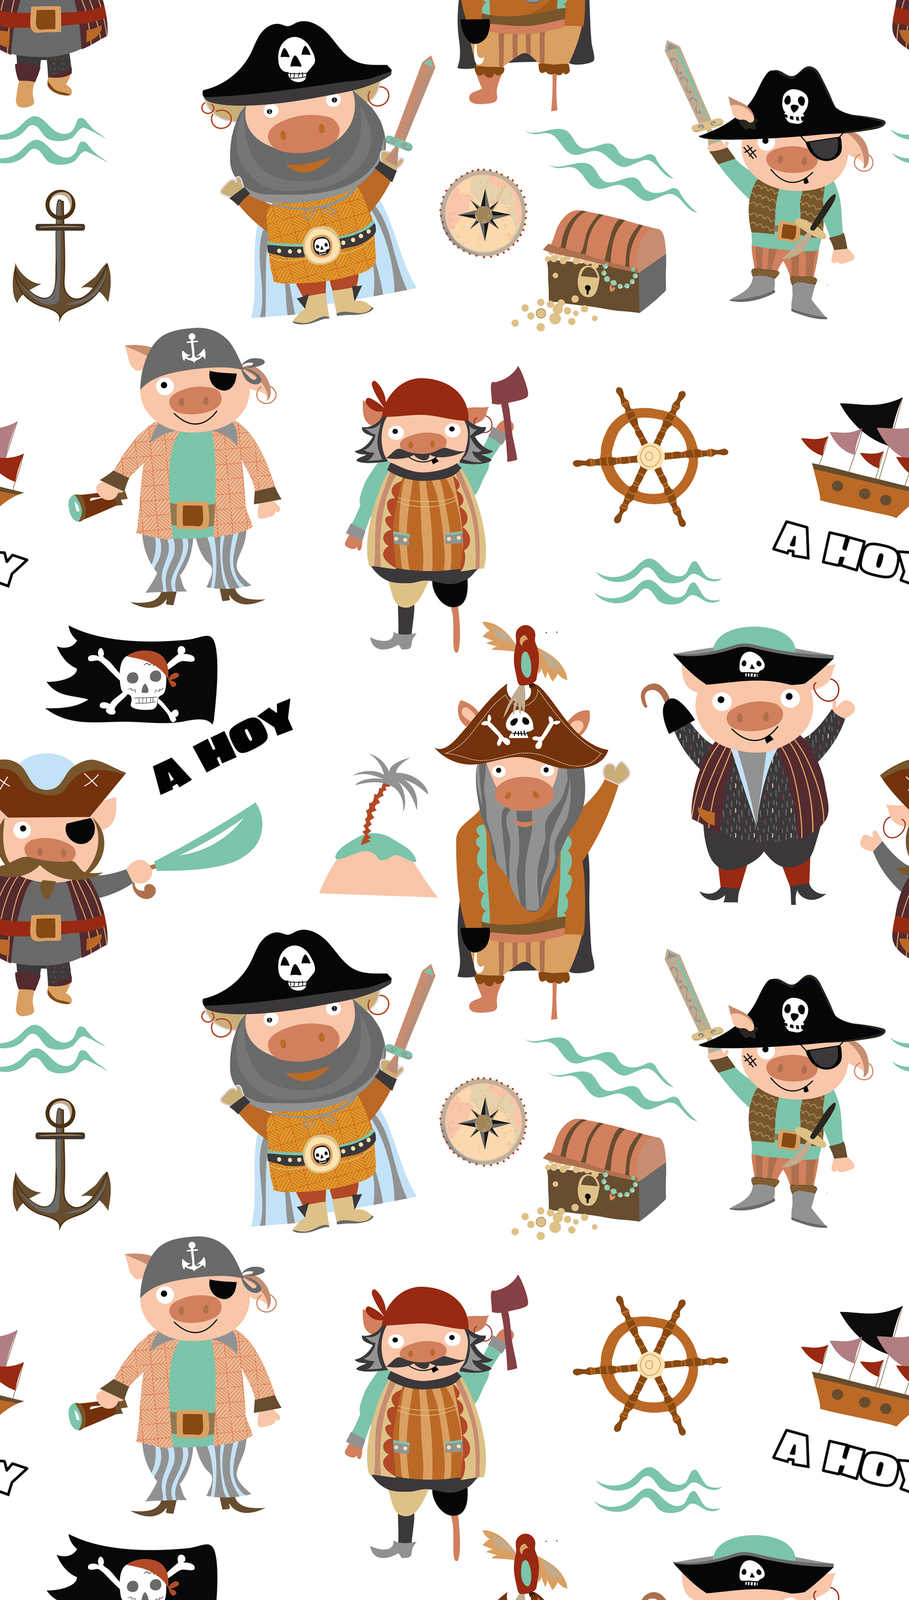             Kinderbehang met verschillende piraten en symbolen - kleurrijk, crème, bruin
        